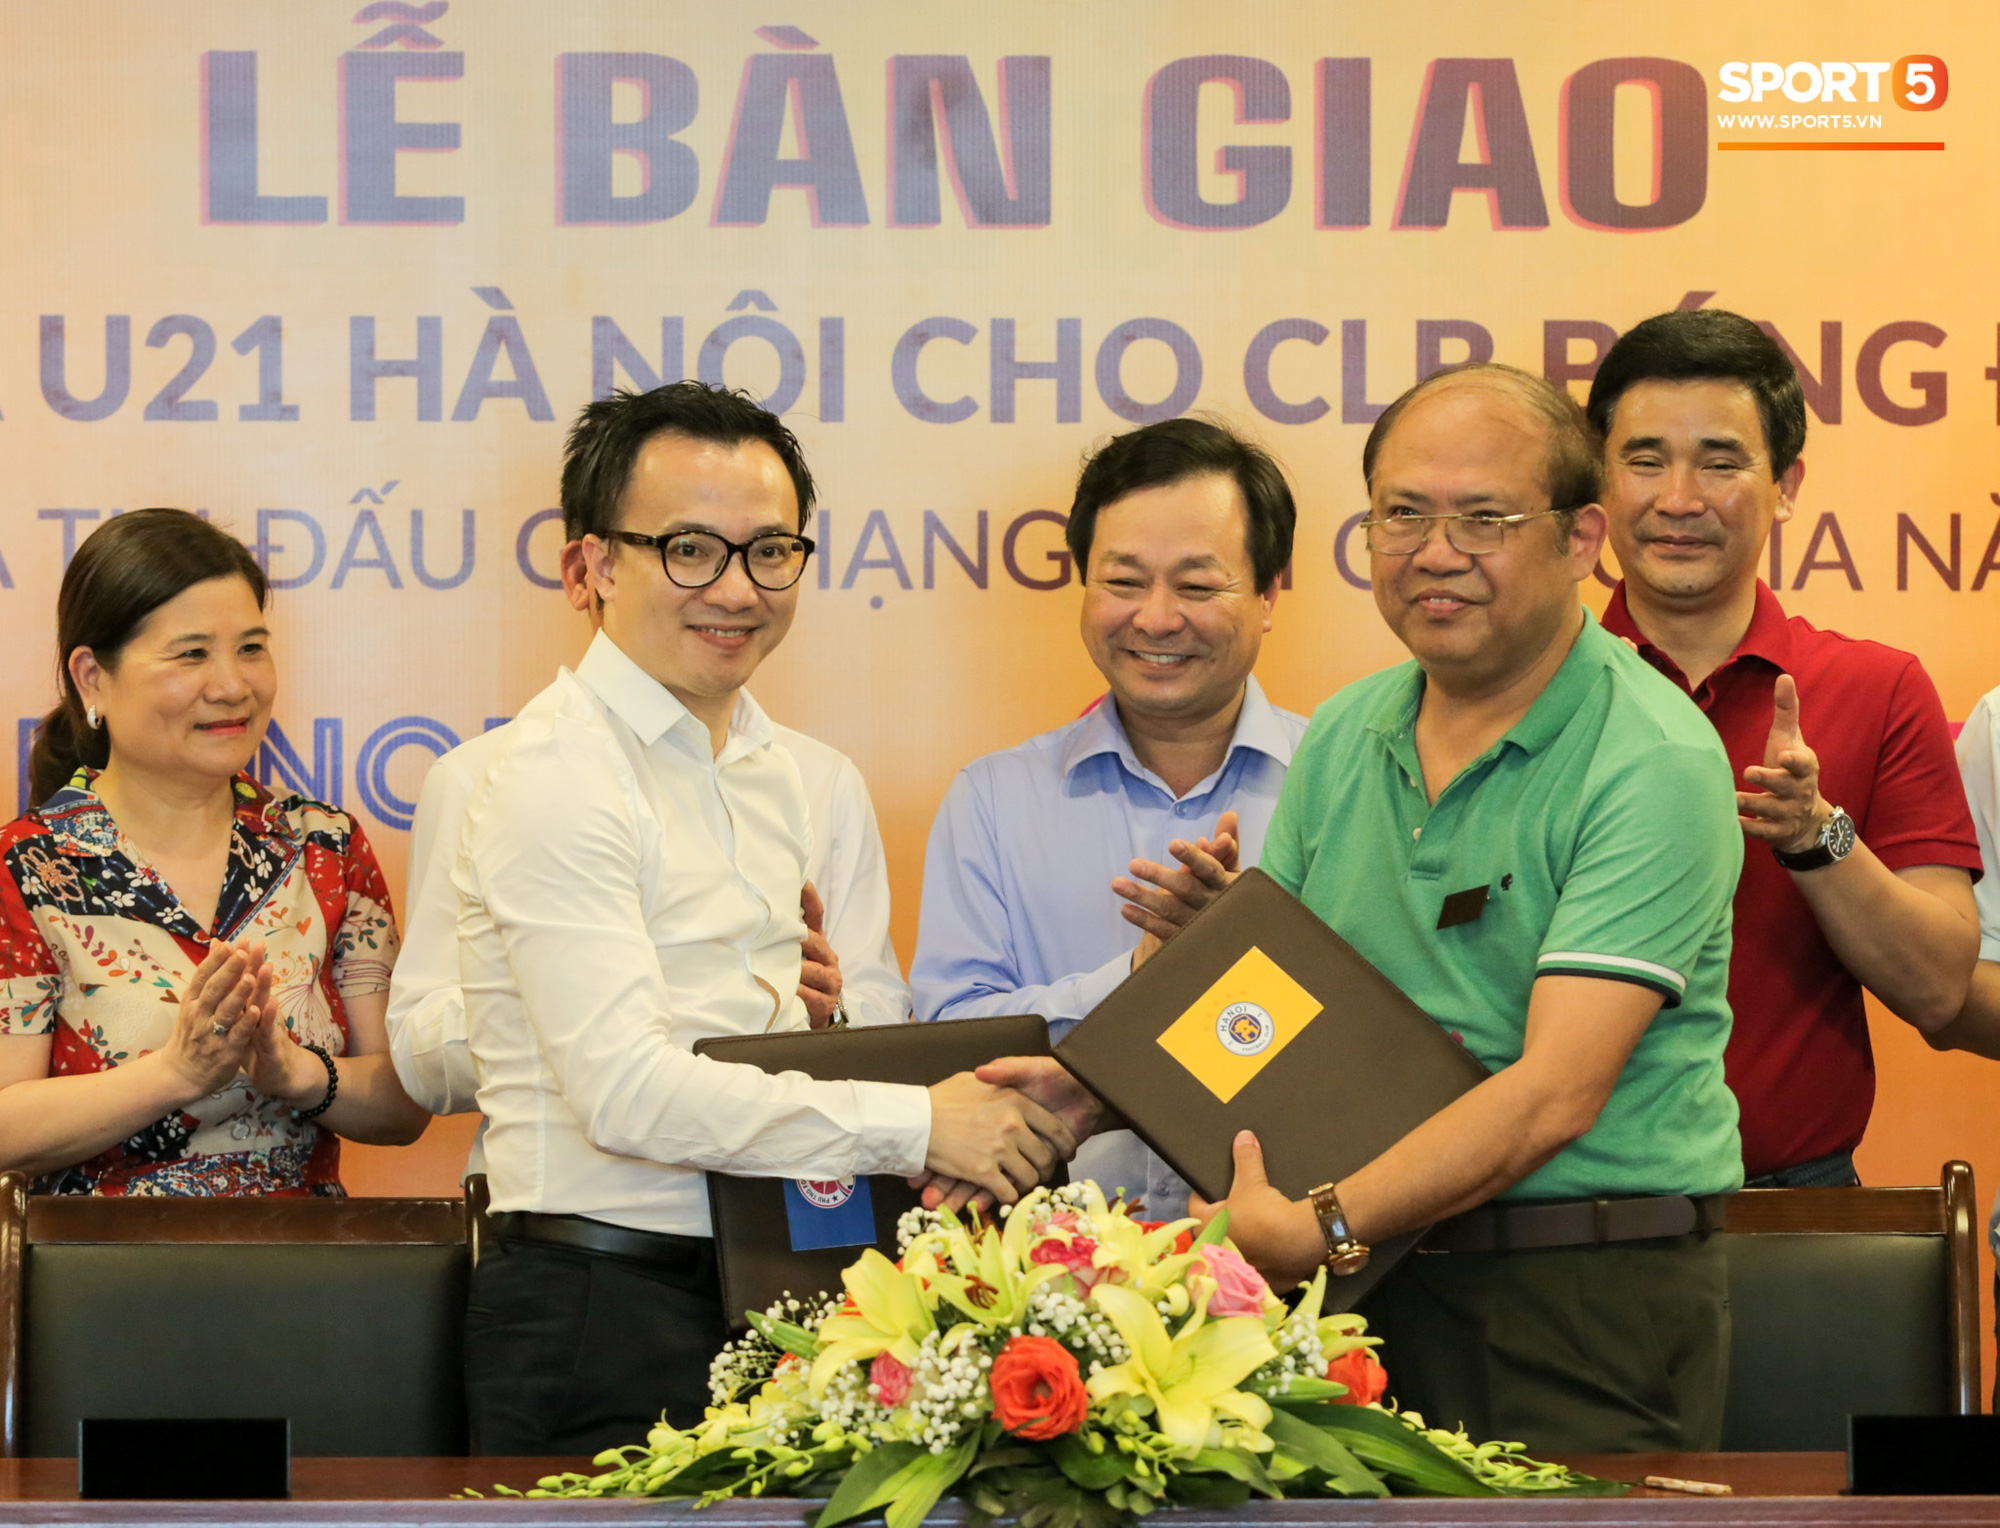 Hà Nội FC chuyển giao đội U21 cho CLB ở giải hạng Nhì, nhà vô địch AFF Cup làm HLV trưởng - Ảnh 1.